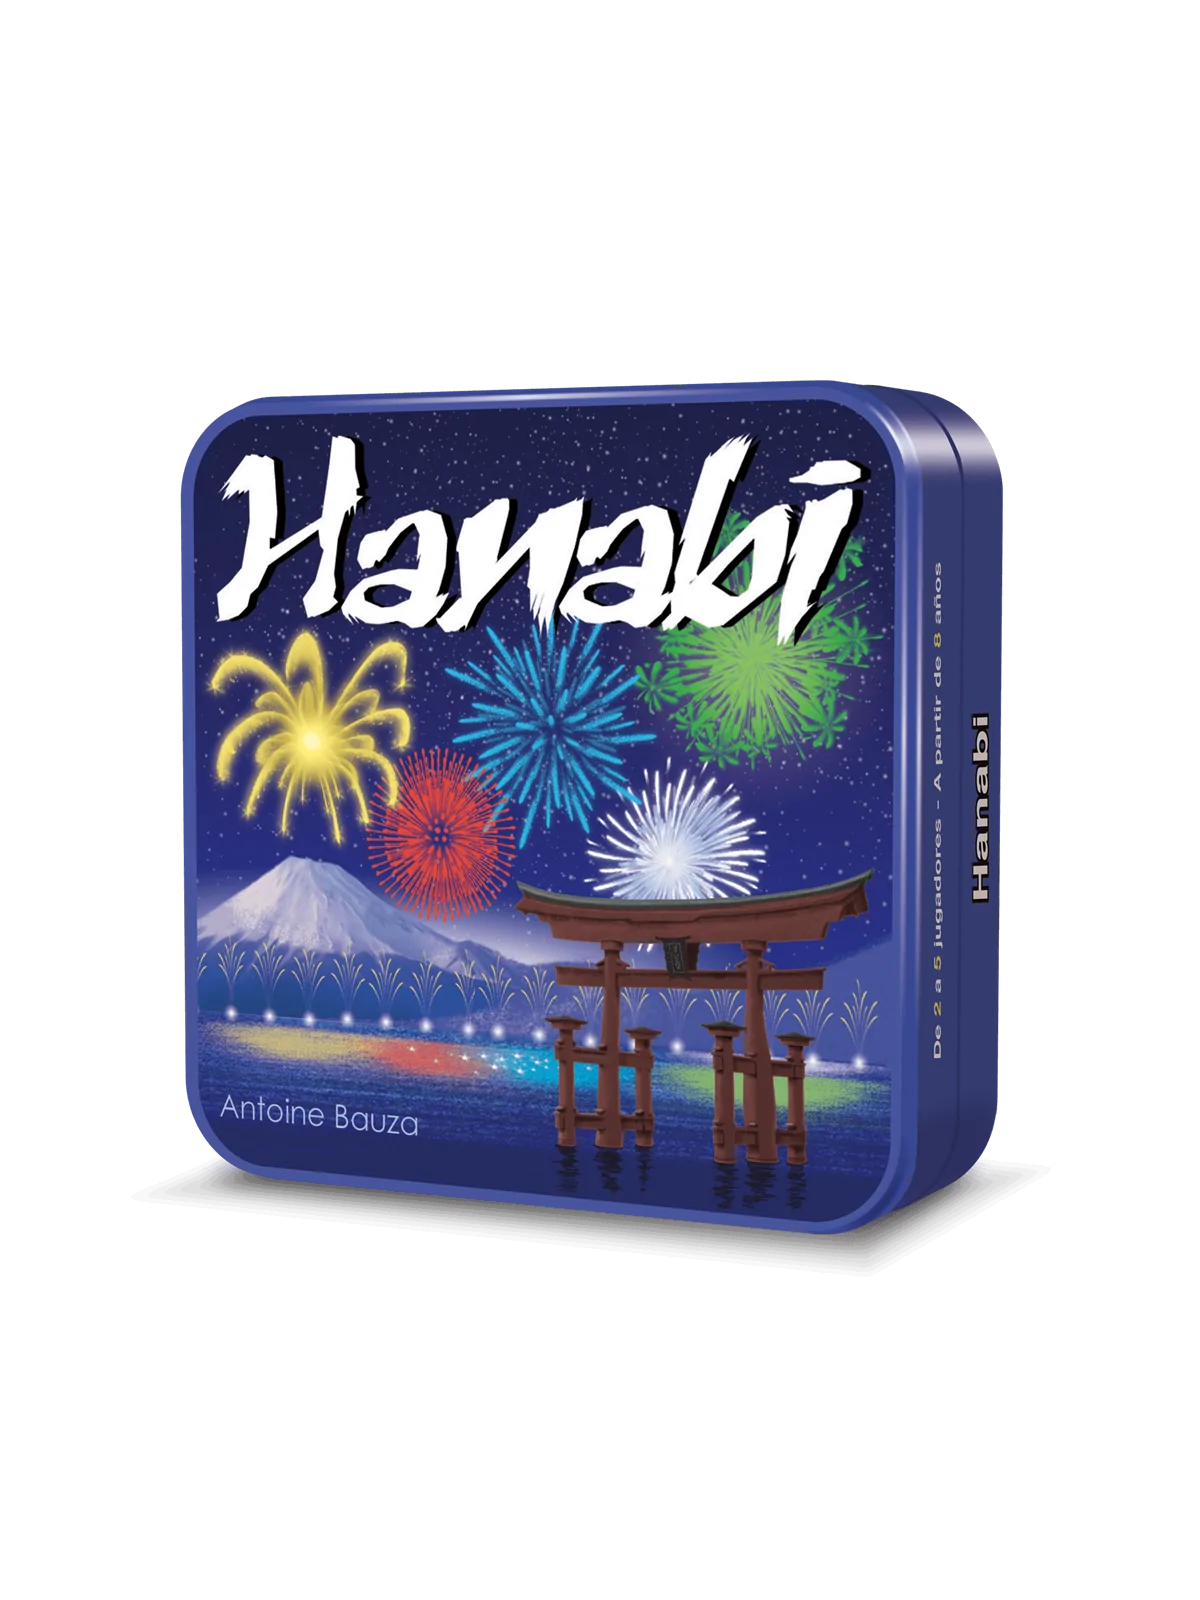 Comprar Hanabi barato al mejor precio 8,99 € de Cocktail Games